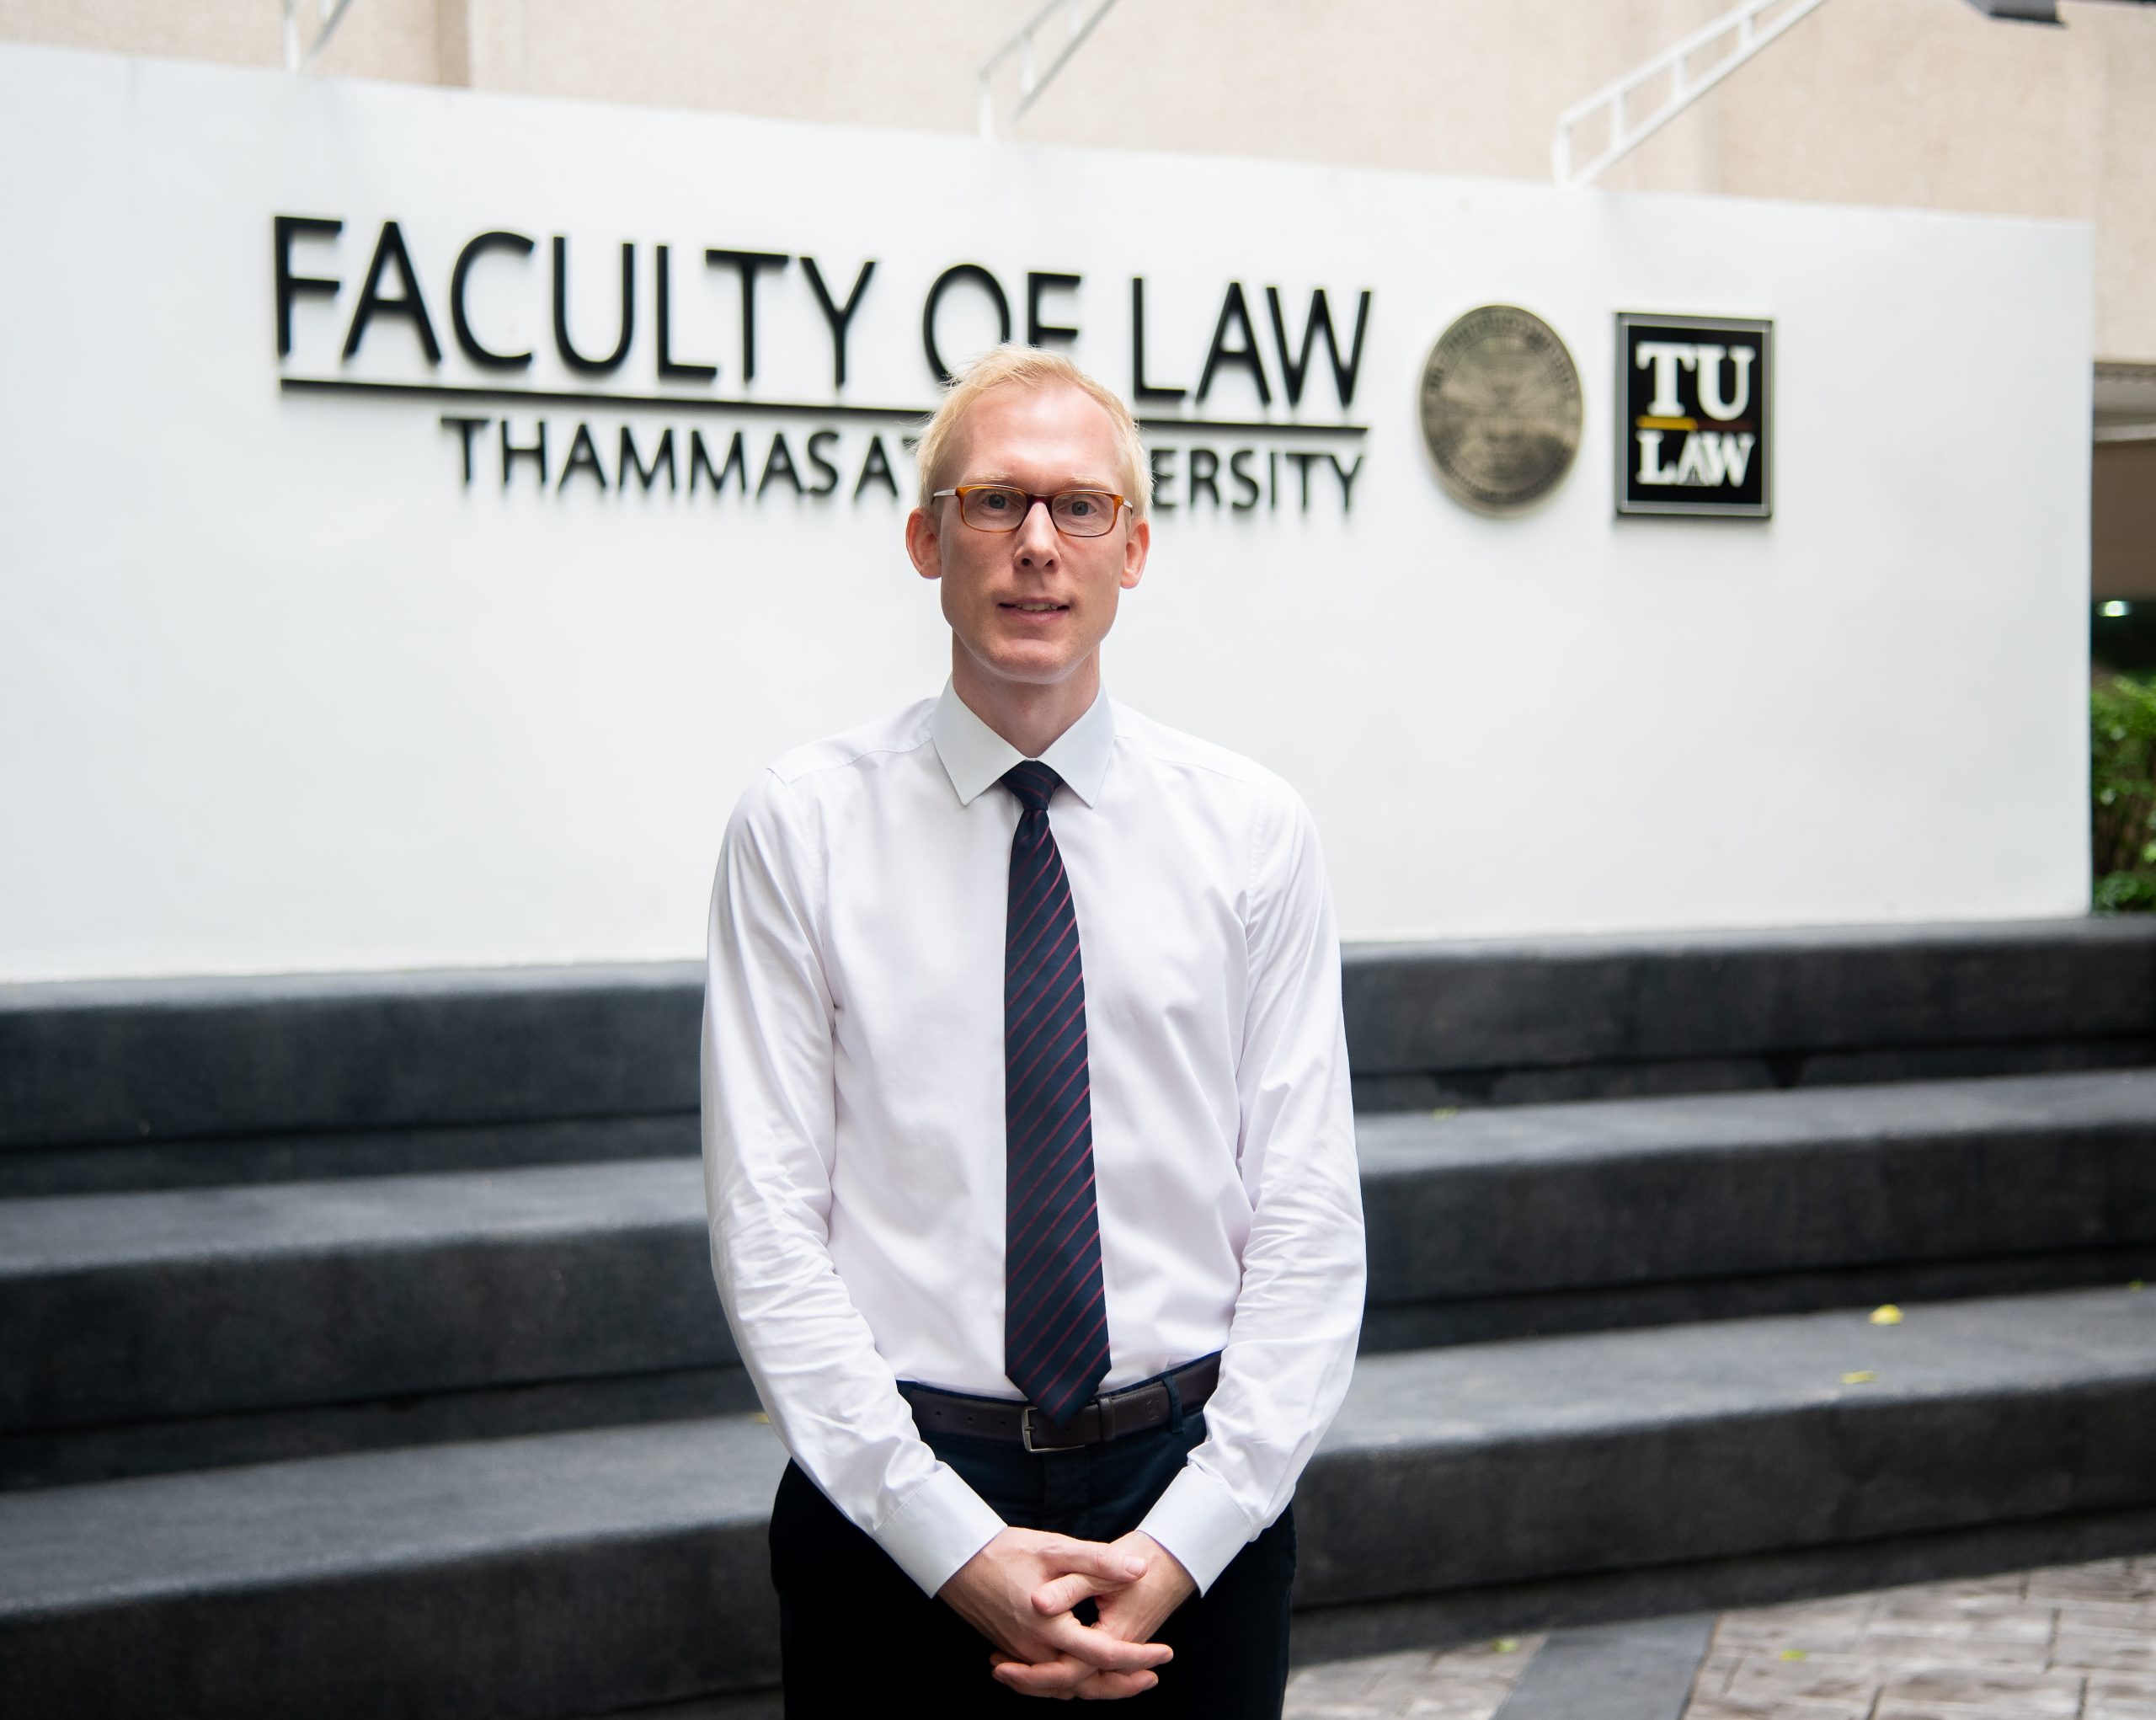 EP.7: [คุยกับอาจารย์กฎหมาย] คุยกับอาจารย์ ดร.ลัสเซอ ชุลท์ อาจารย์ประจำคณะนิติศาสตร์ชาวเยอรมัน